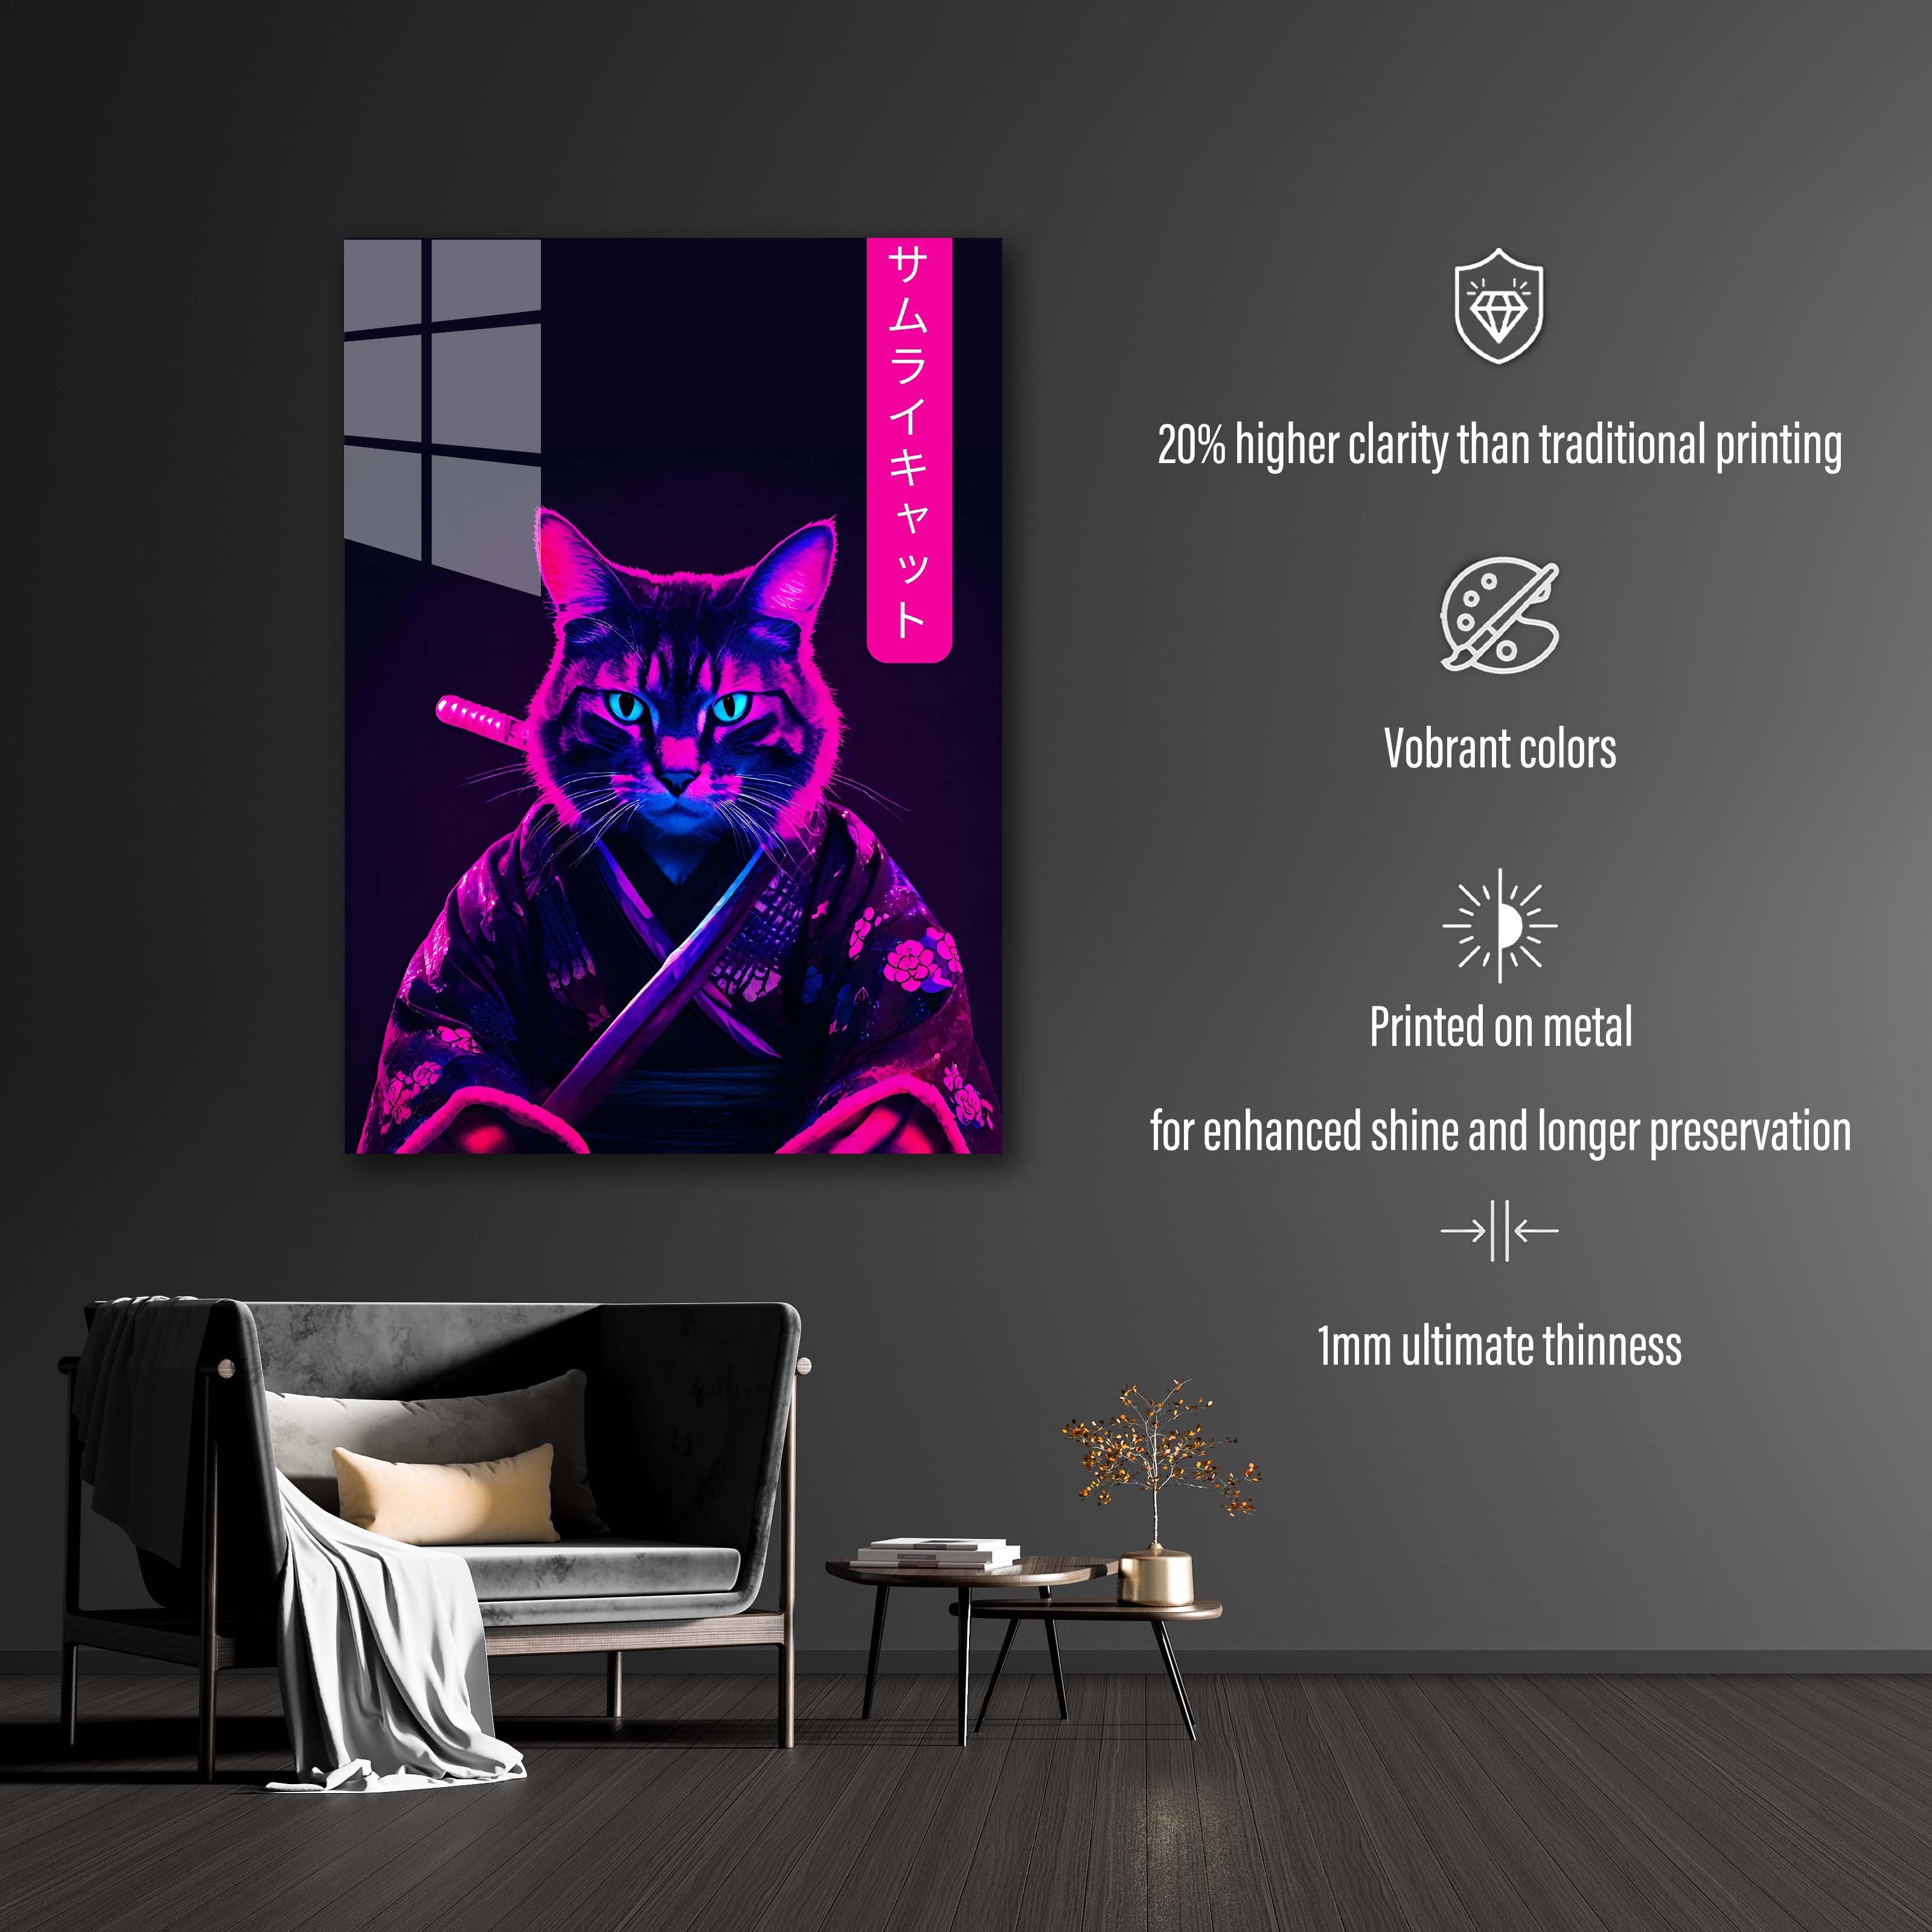 Cat Samurai-designed by @DynCreative